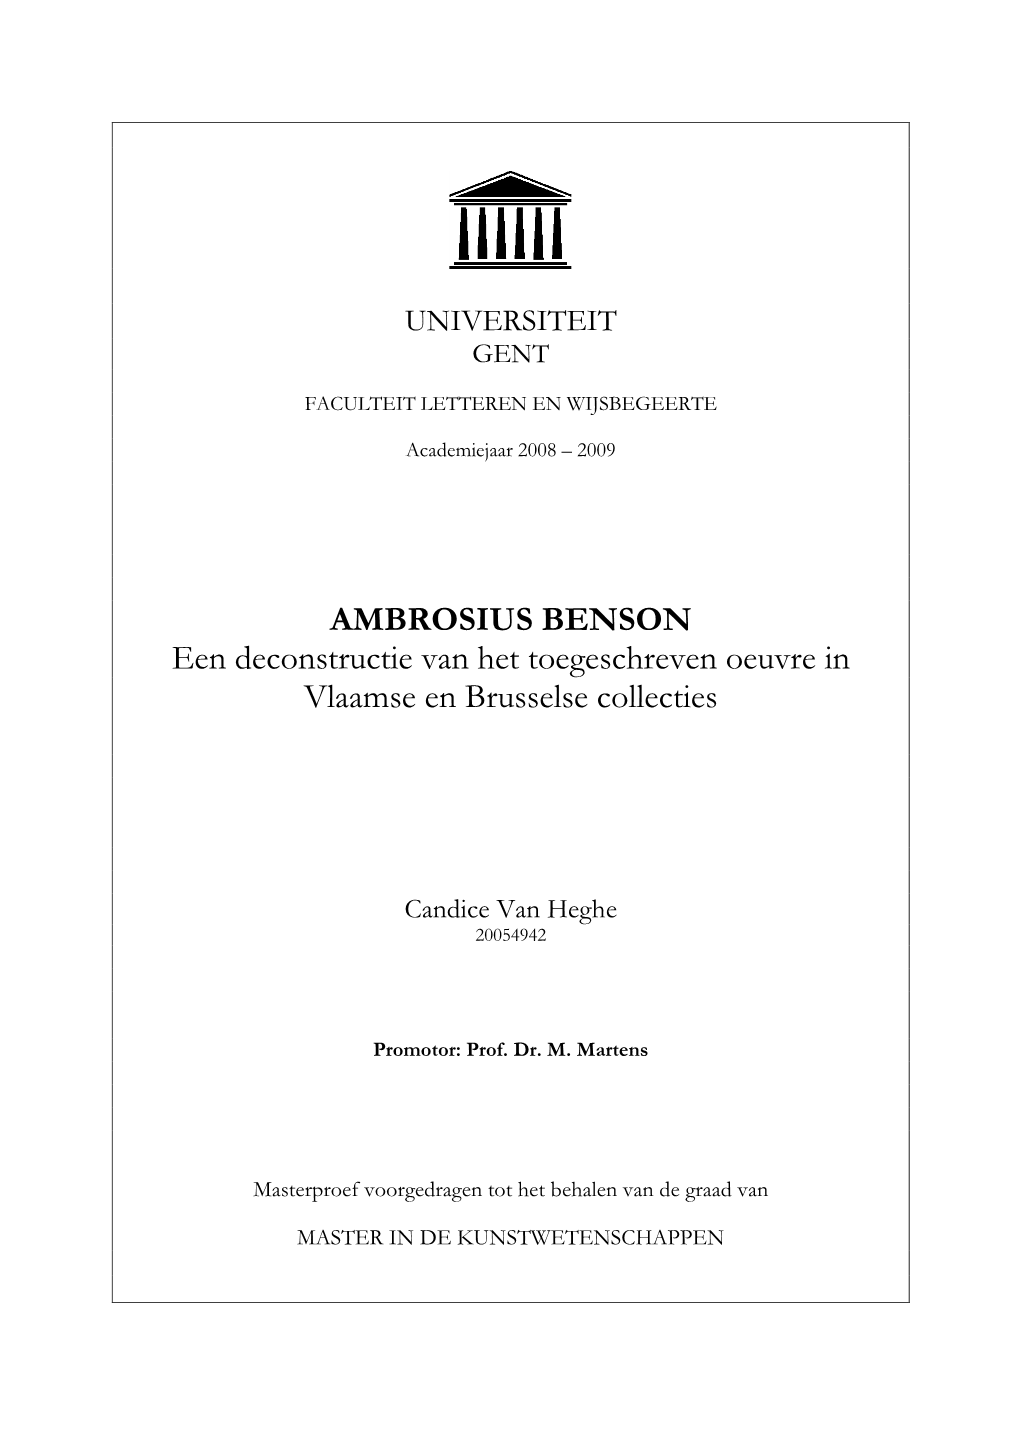 AMBROSIUS BENSON Een Deconstructie Van Het Toegeschreven Oeuvre in Vlaamse En Brusselse Collecties